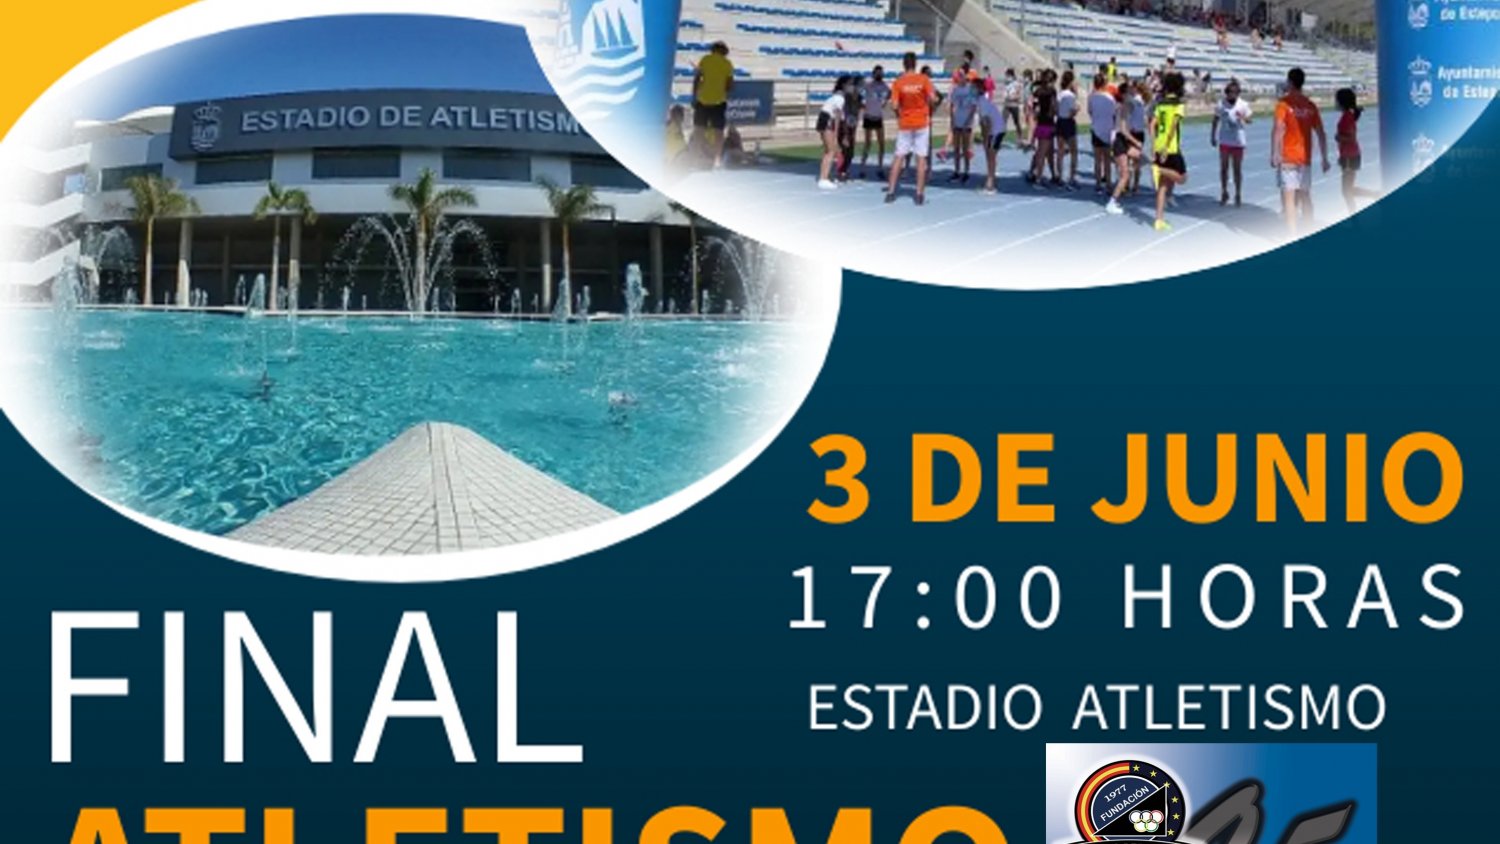 La Final de Atletismo Escolar de Estepona cita a 264 alumnos el próximo 3 de junio